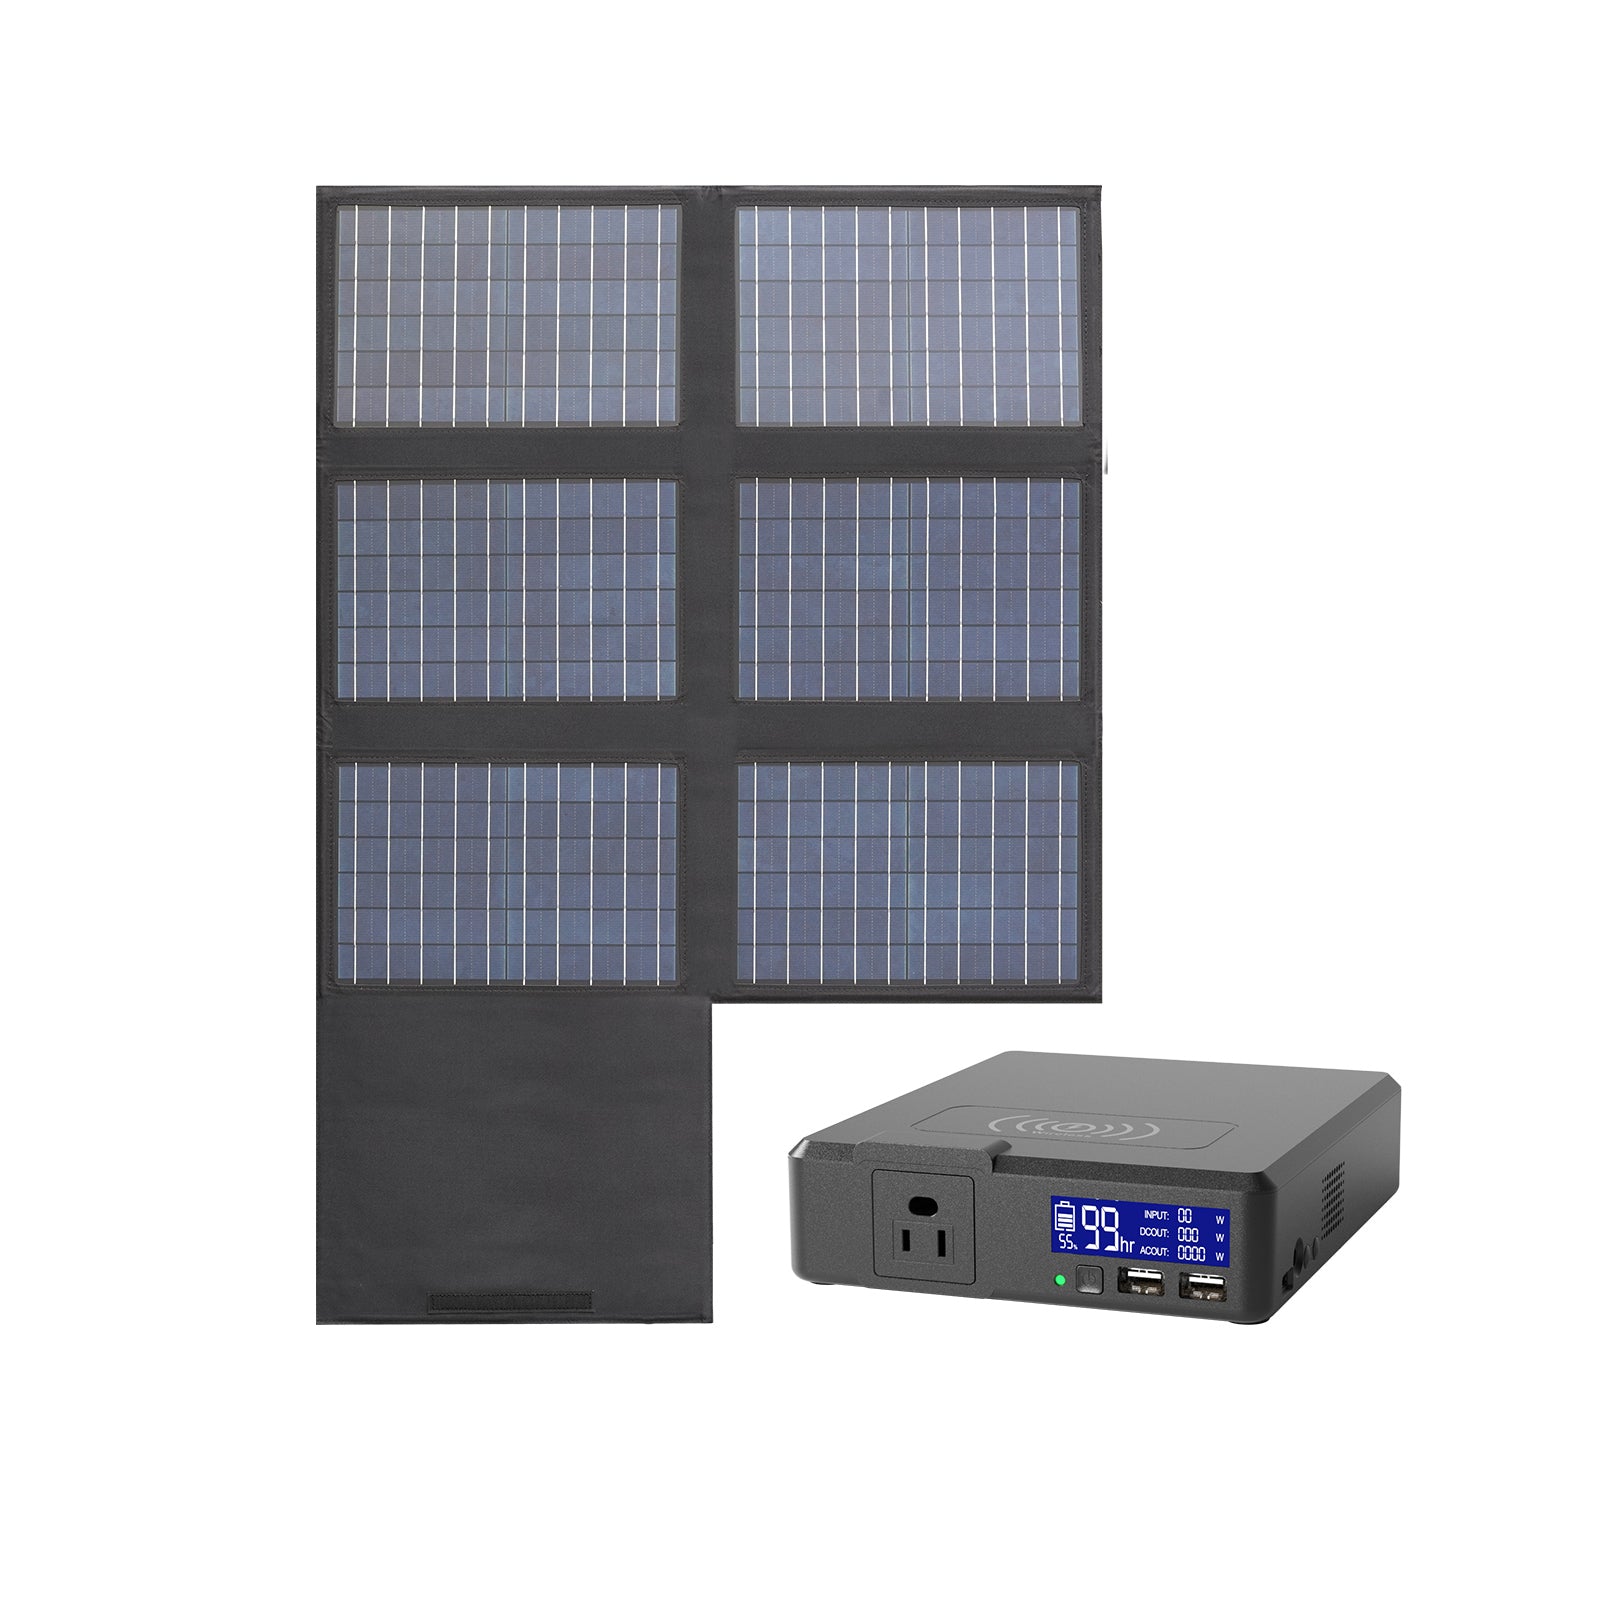 Générateur solaire AllPowers 288Wh / 78000 mAh : Fiche produit et avis